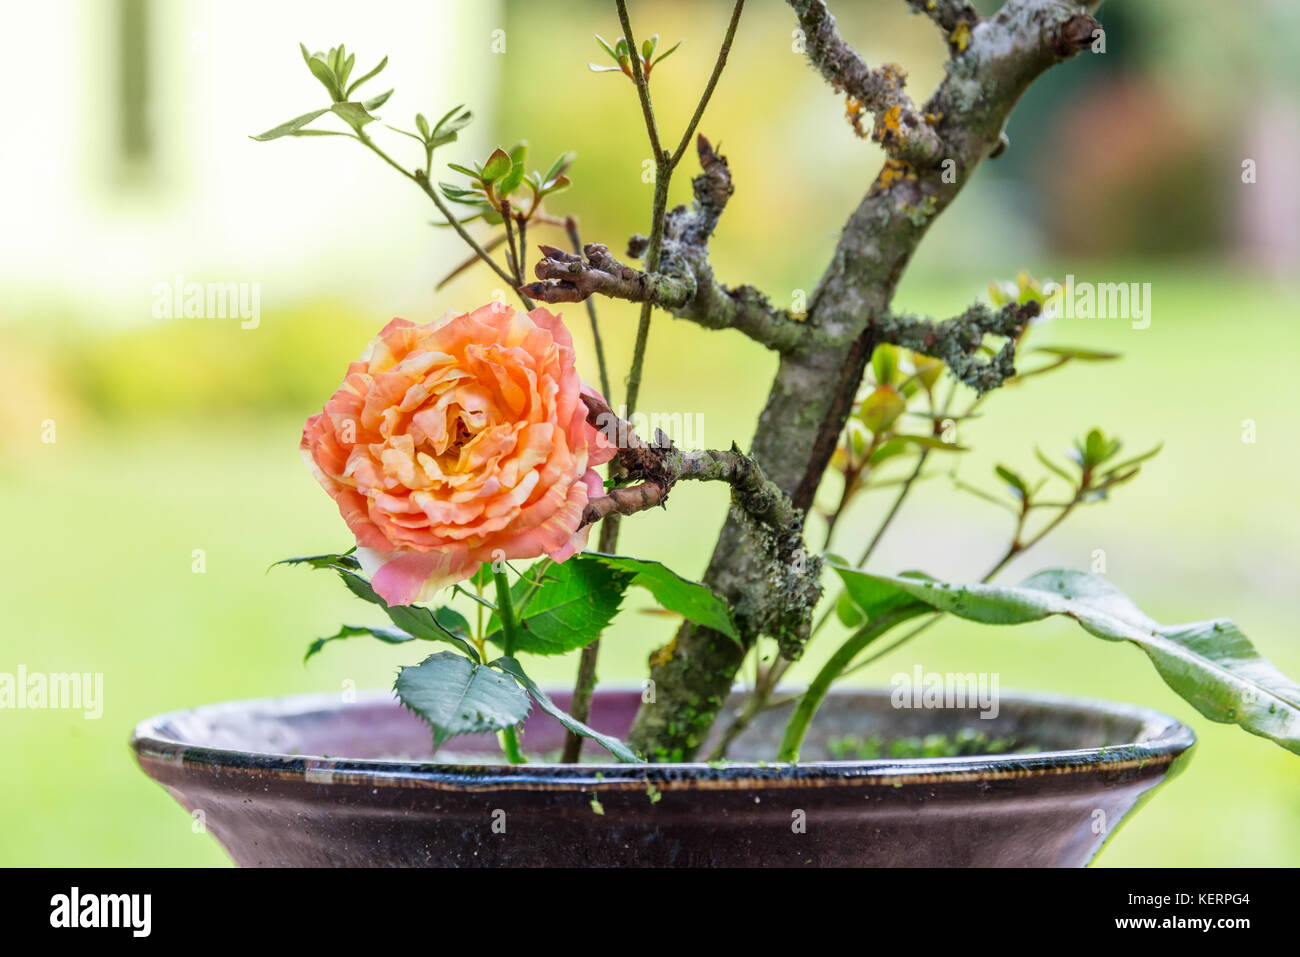 Close up of a Chinese flower arrangement avec une orange rose Banque D'Images